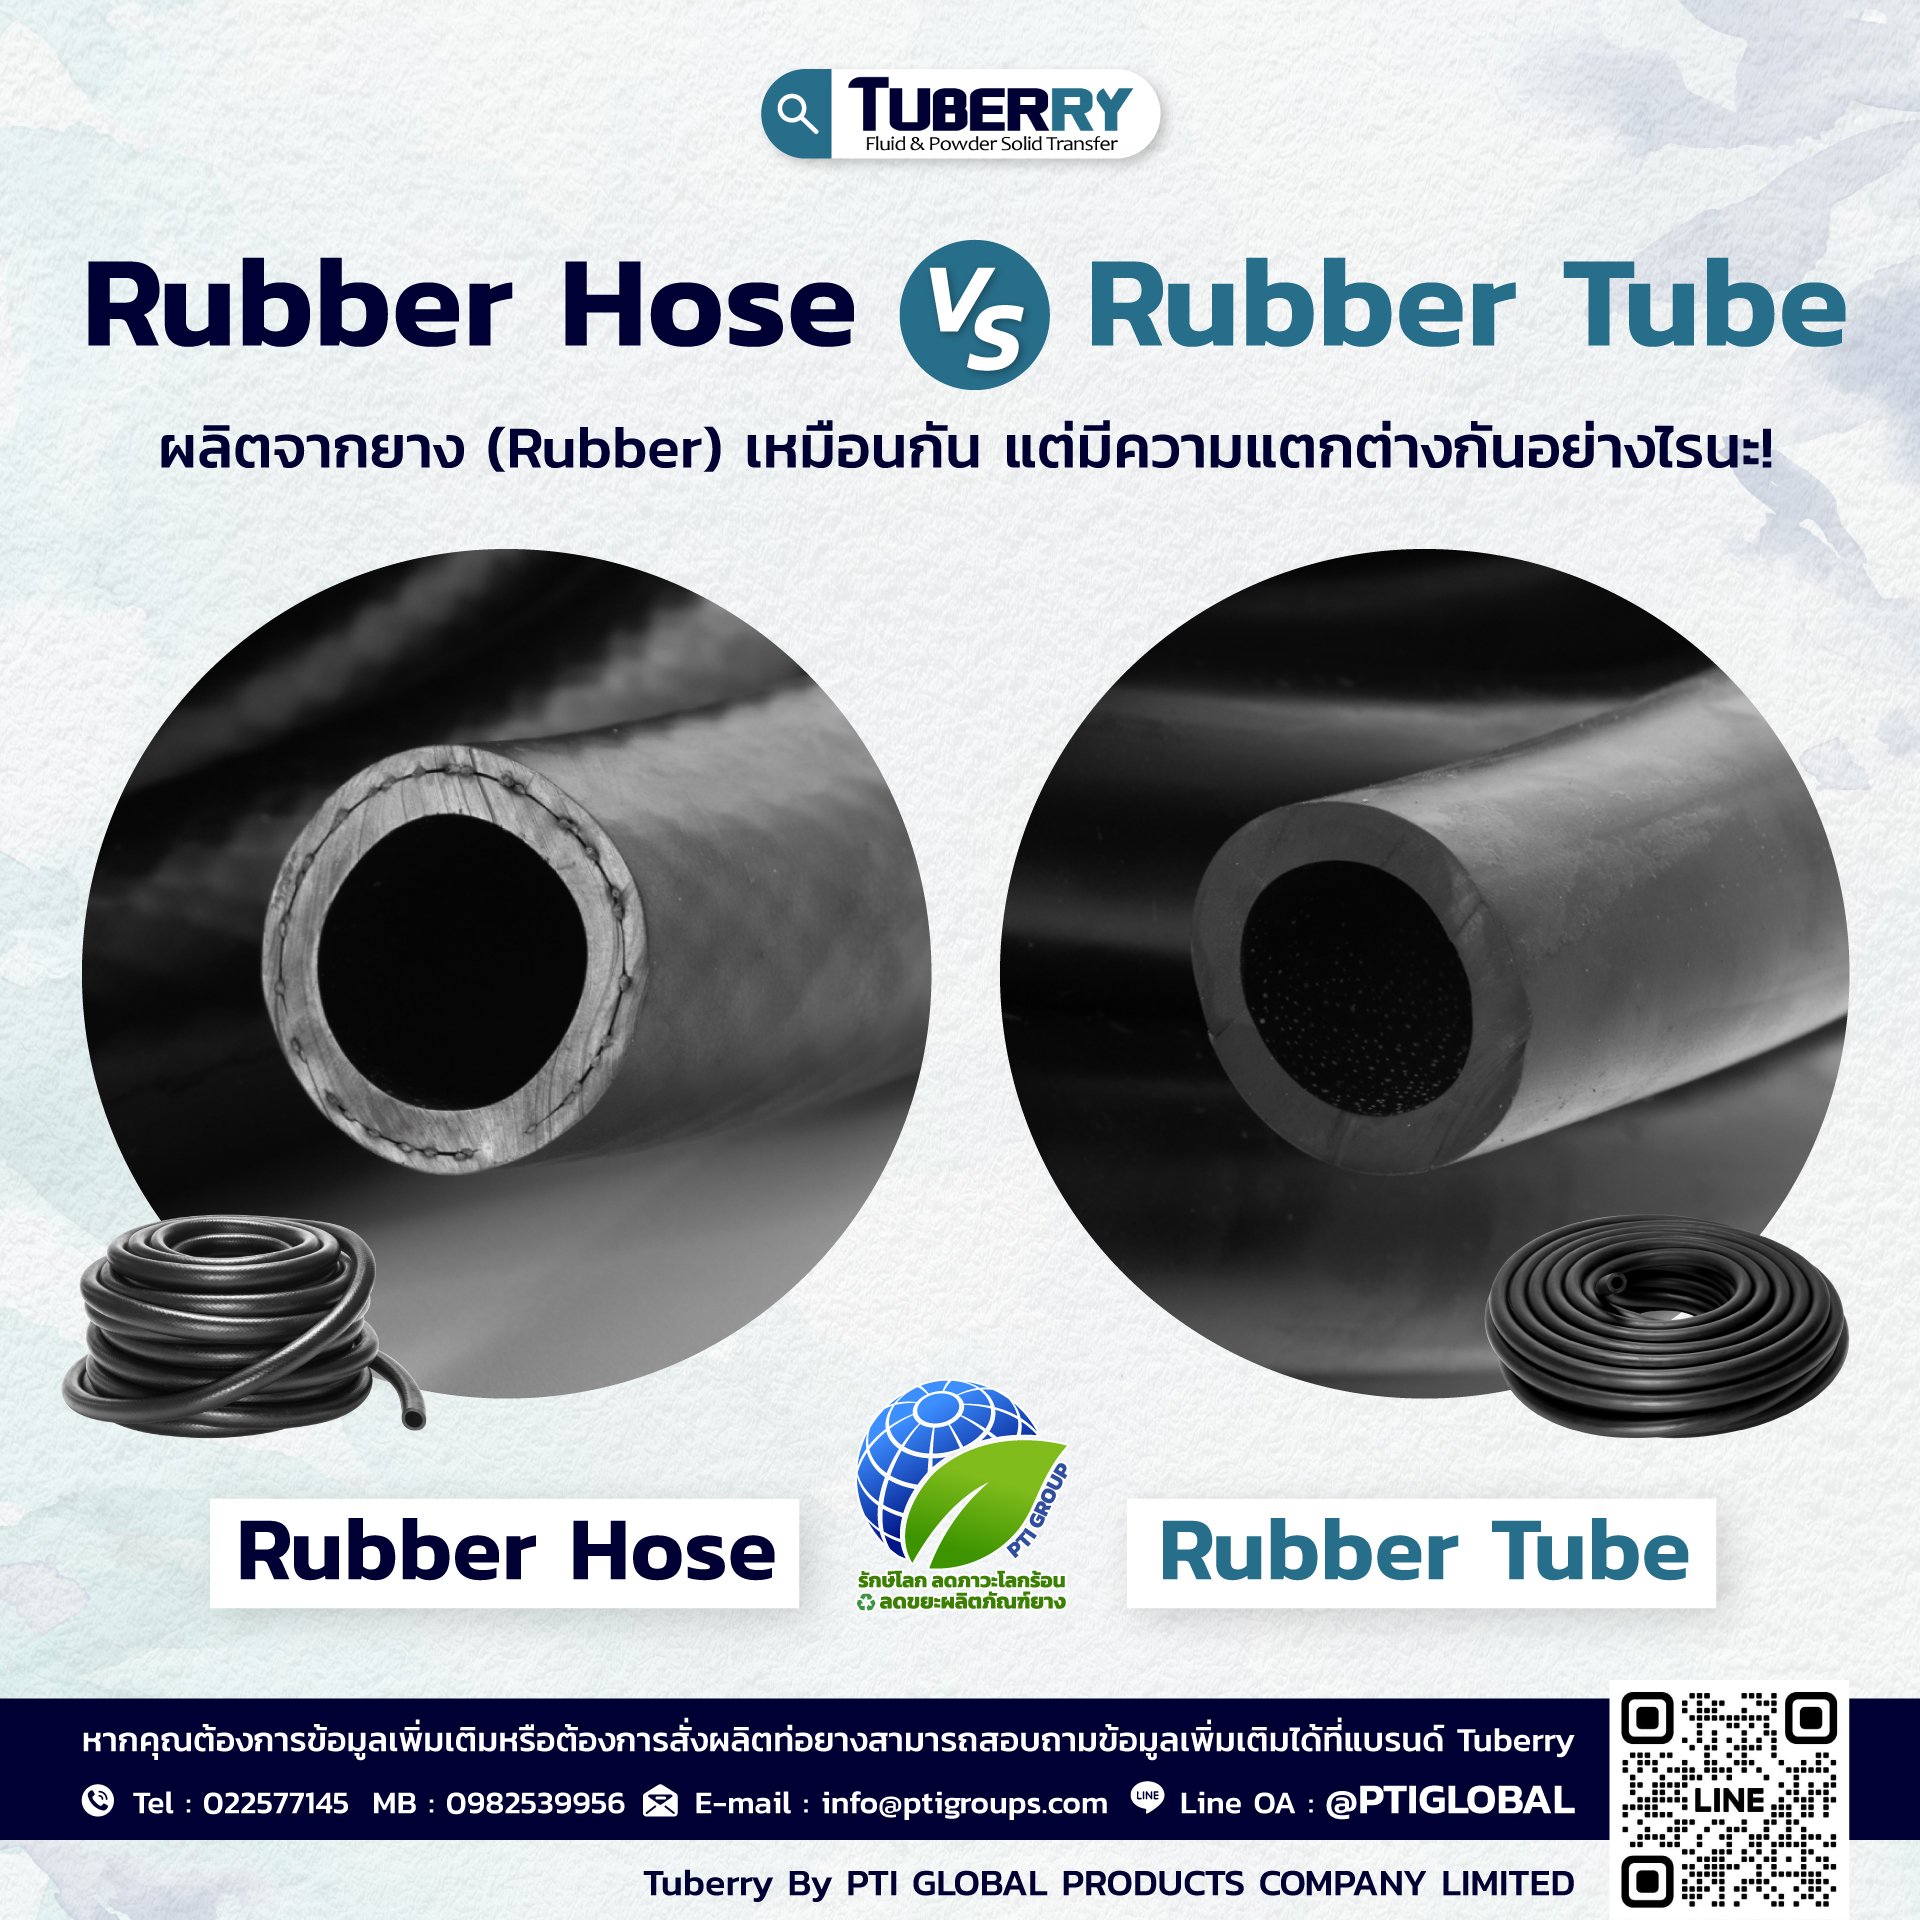 Rubber Hose V.S. Rubber Tube